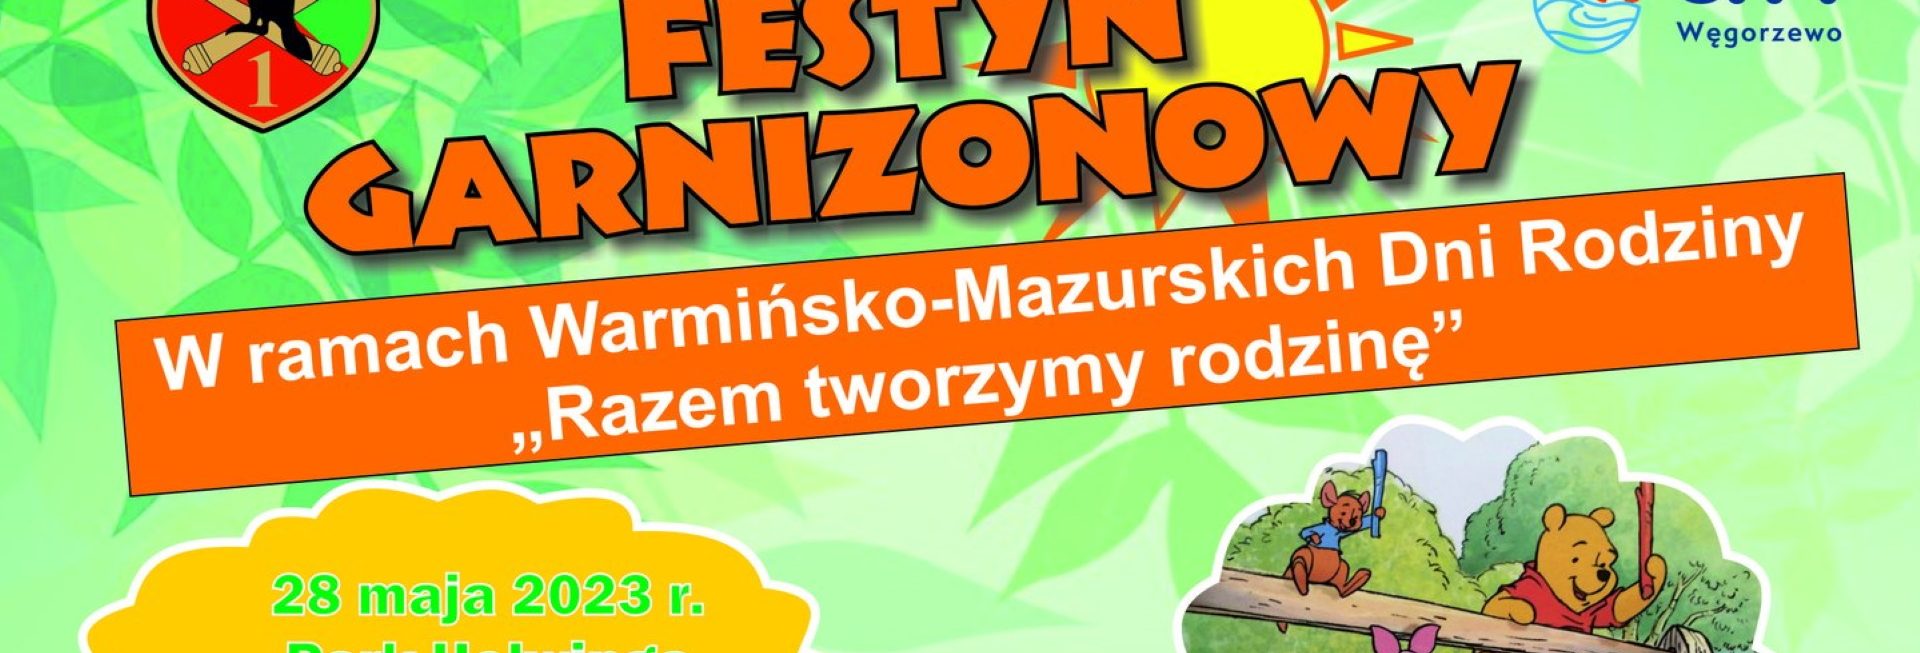 Plakat zapraszający w niedzielę 28 maja 2023 r. do Węgorzewa na Festyn Garnizonowy "Razem Tworzymy Rodzinę" Węgorzewo 2023.